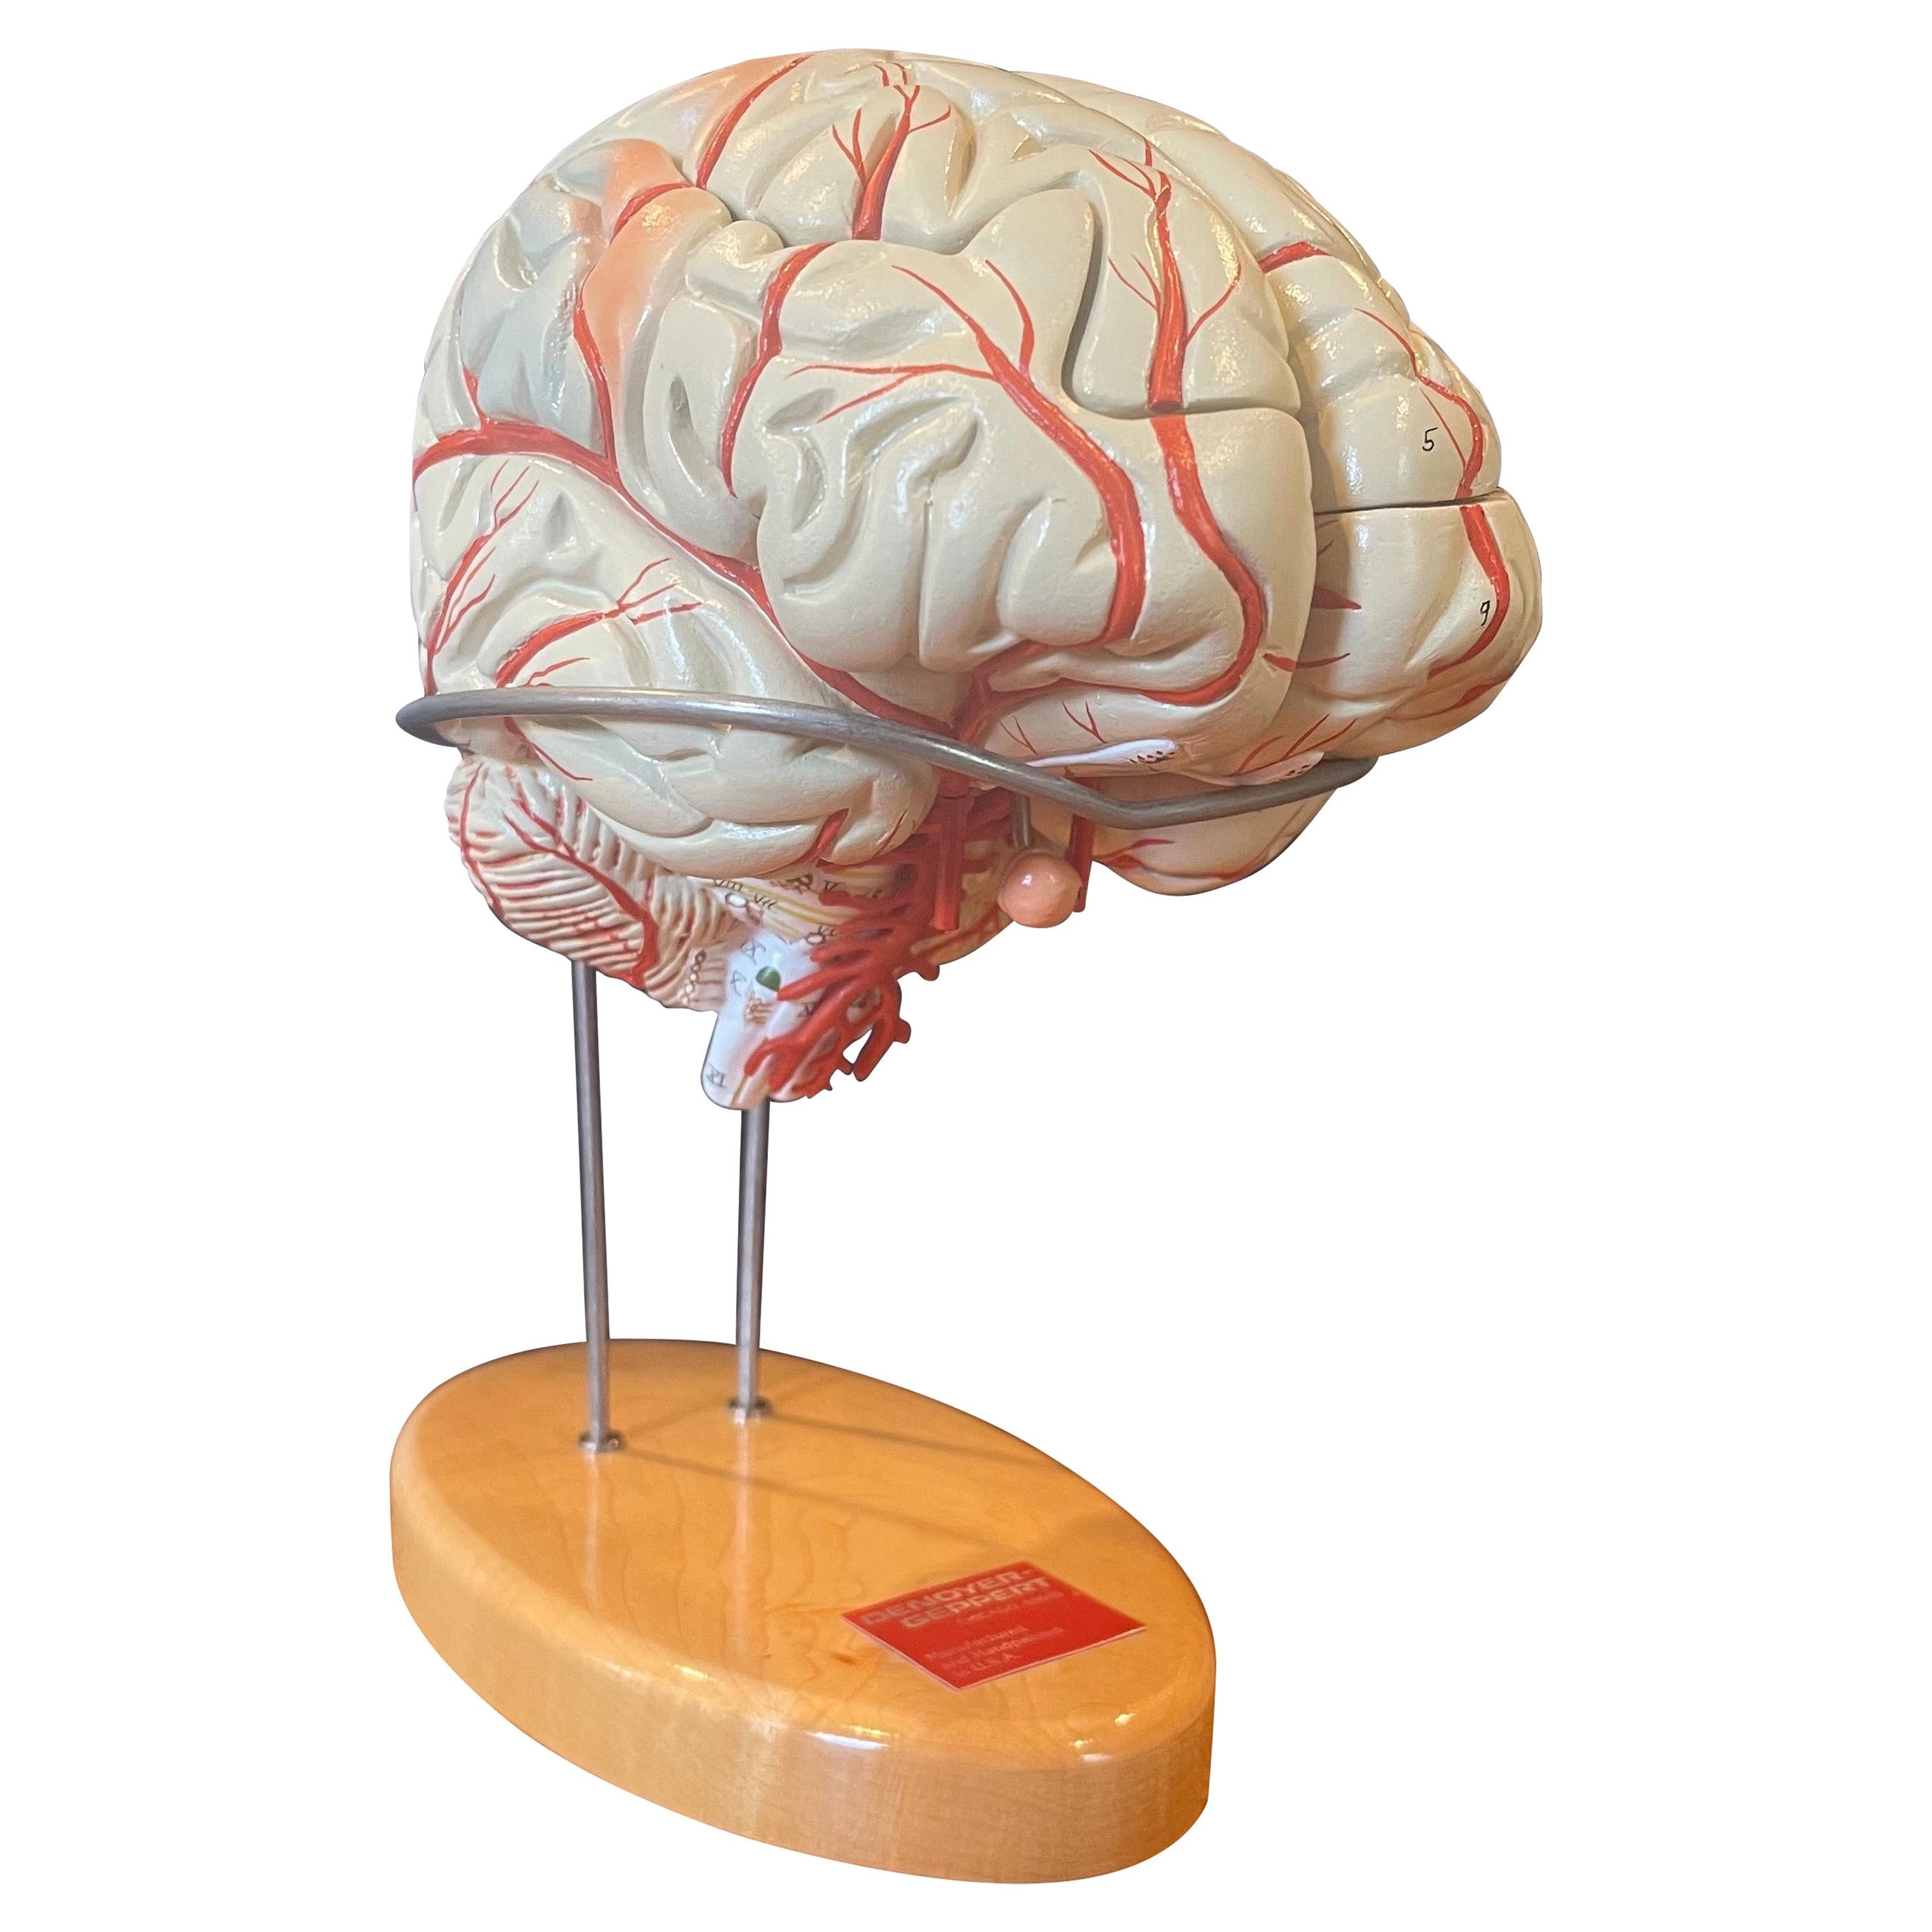 Vintage Handbemaltes Gehirnmodell von Denoyer Geppert